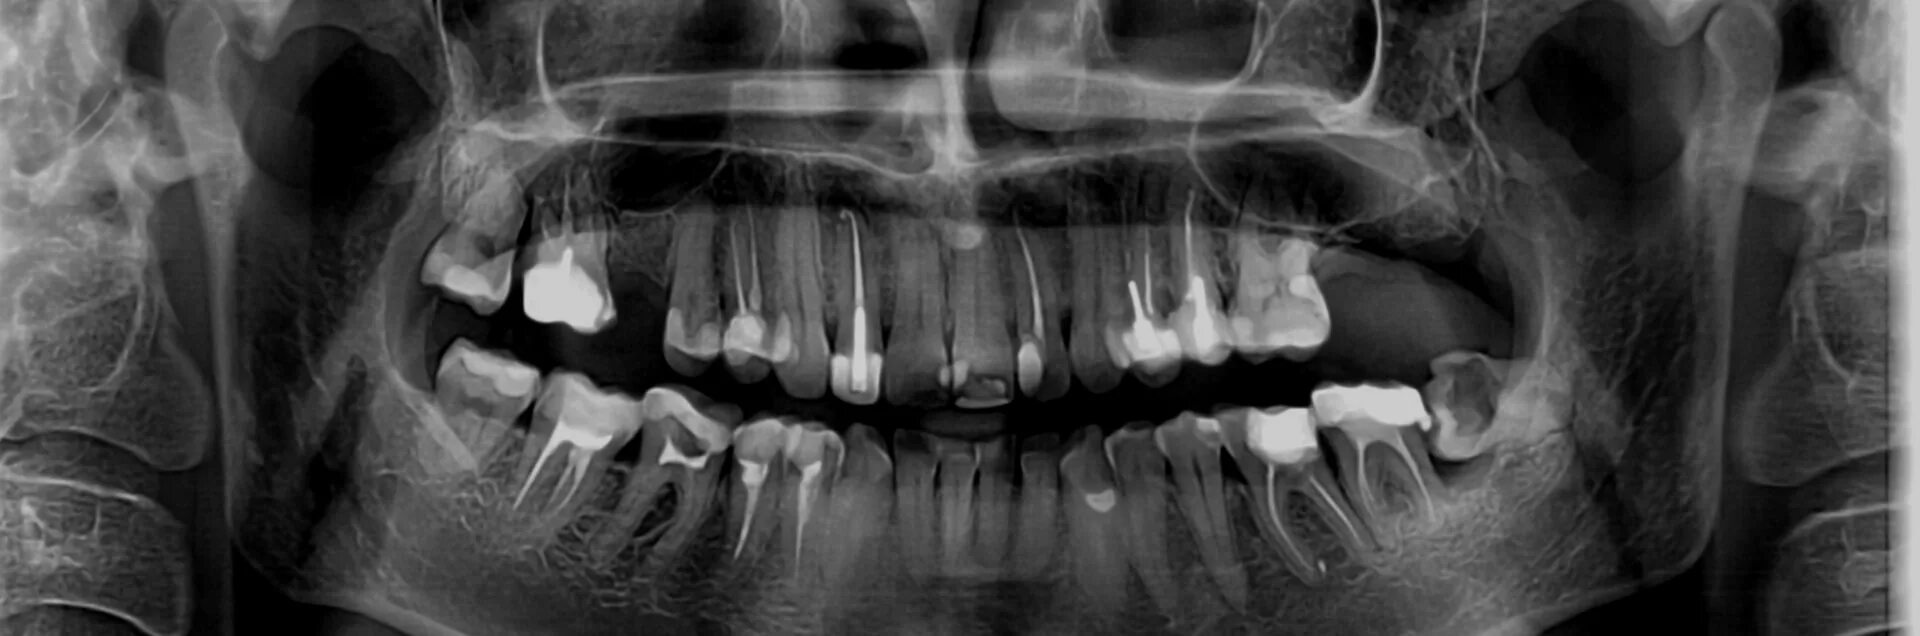 Снимок зубов видное. Ортопантомограмма кариес. Рентген зубов панорамный. Ортопантомограмма зубов. Панорамный снимок челюсти.